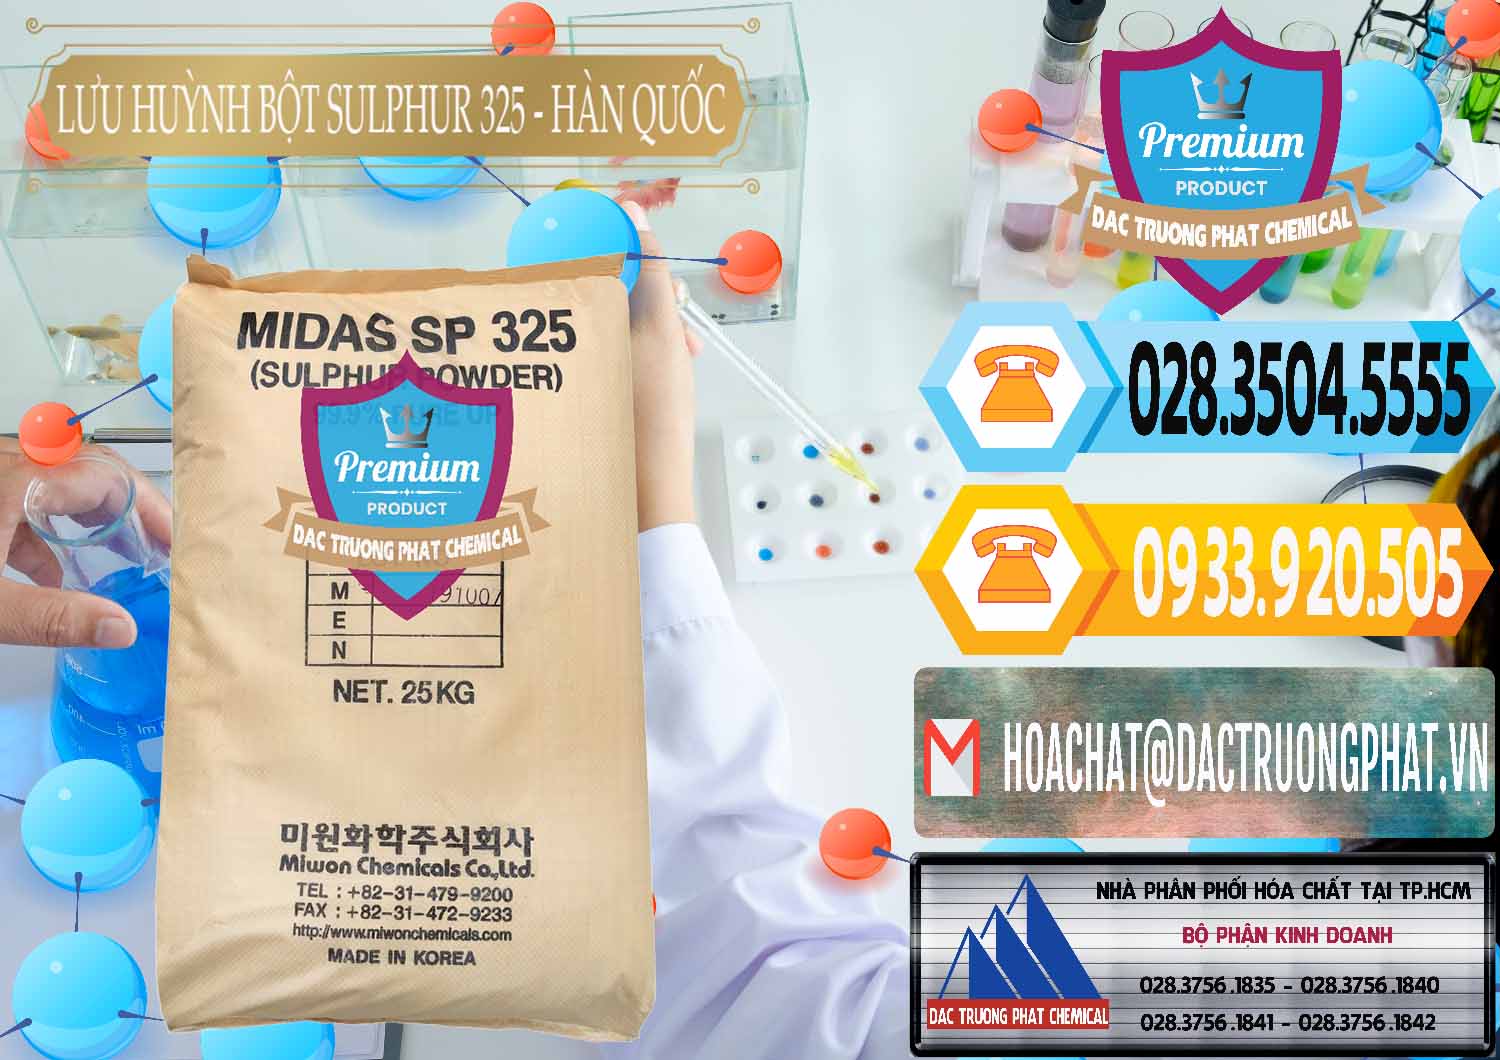 Nơi chuyên bán ( cung ứng ) Lưu huỳnh Bột - Sulfur Powder Midas SP 325 Hàn Quốc Korea - 0198 - Cty phân phối _ bán hóa chất tại TP.HCM - hoachattayrua.net